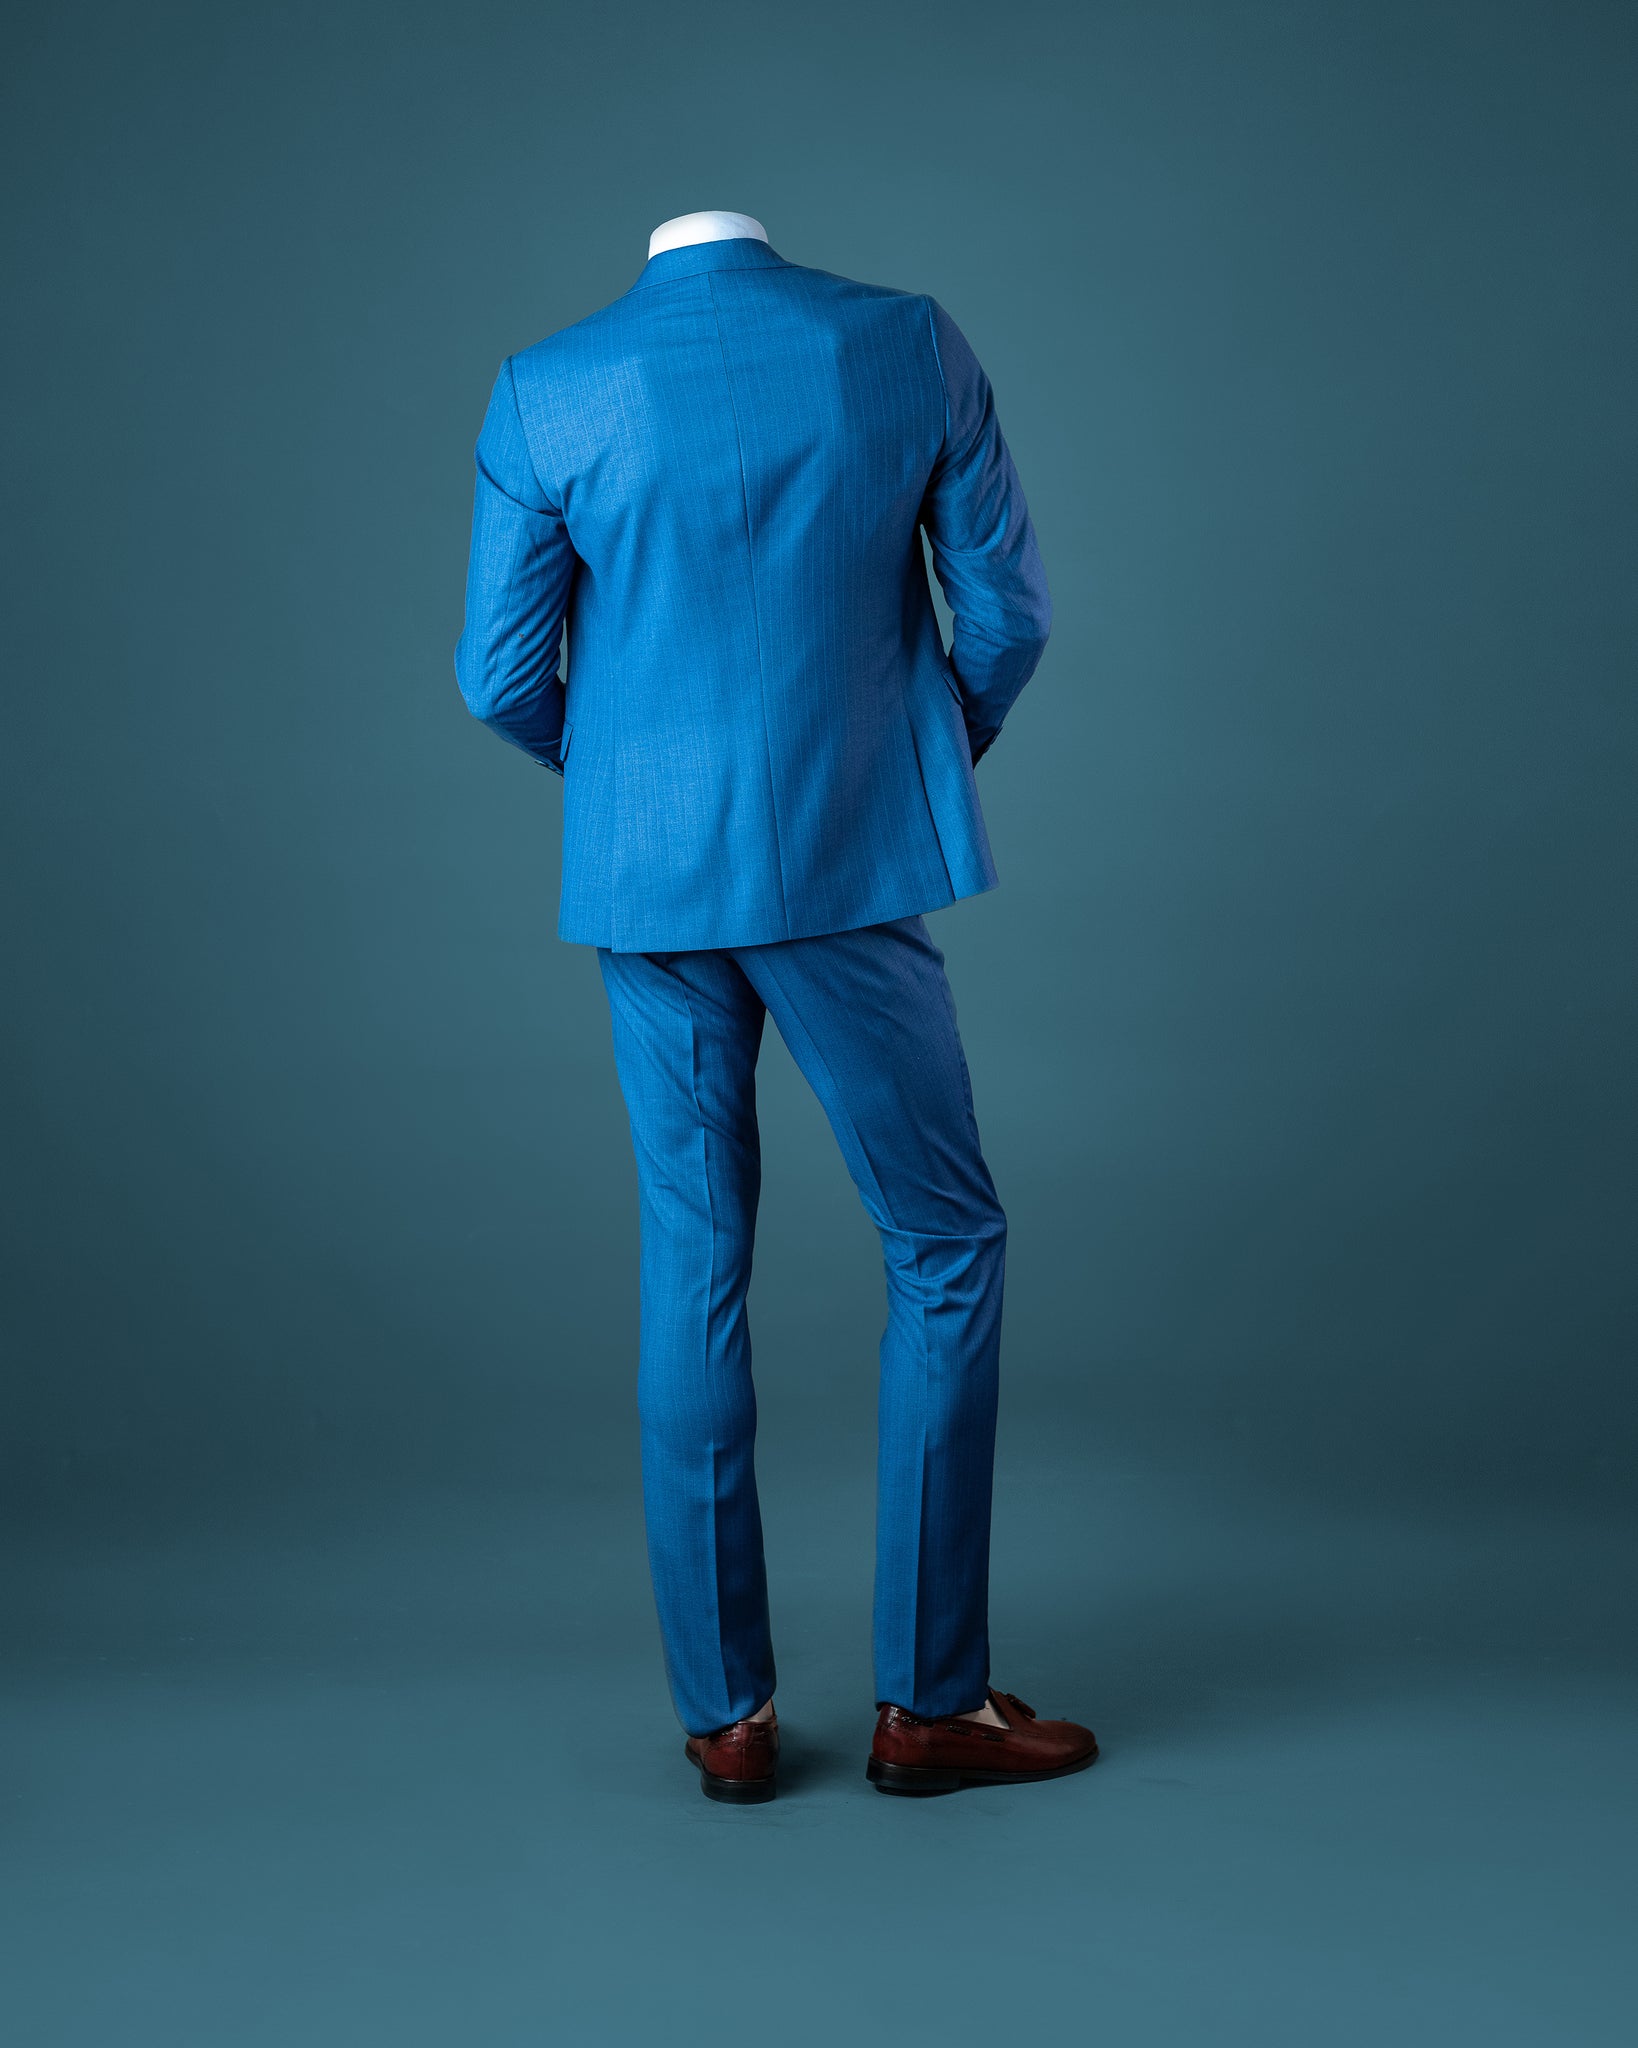 3-Piece Royal Blue Slim Fit Suit